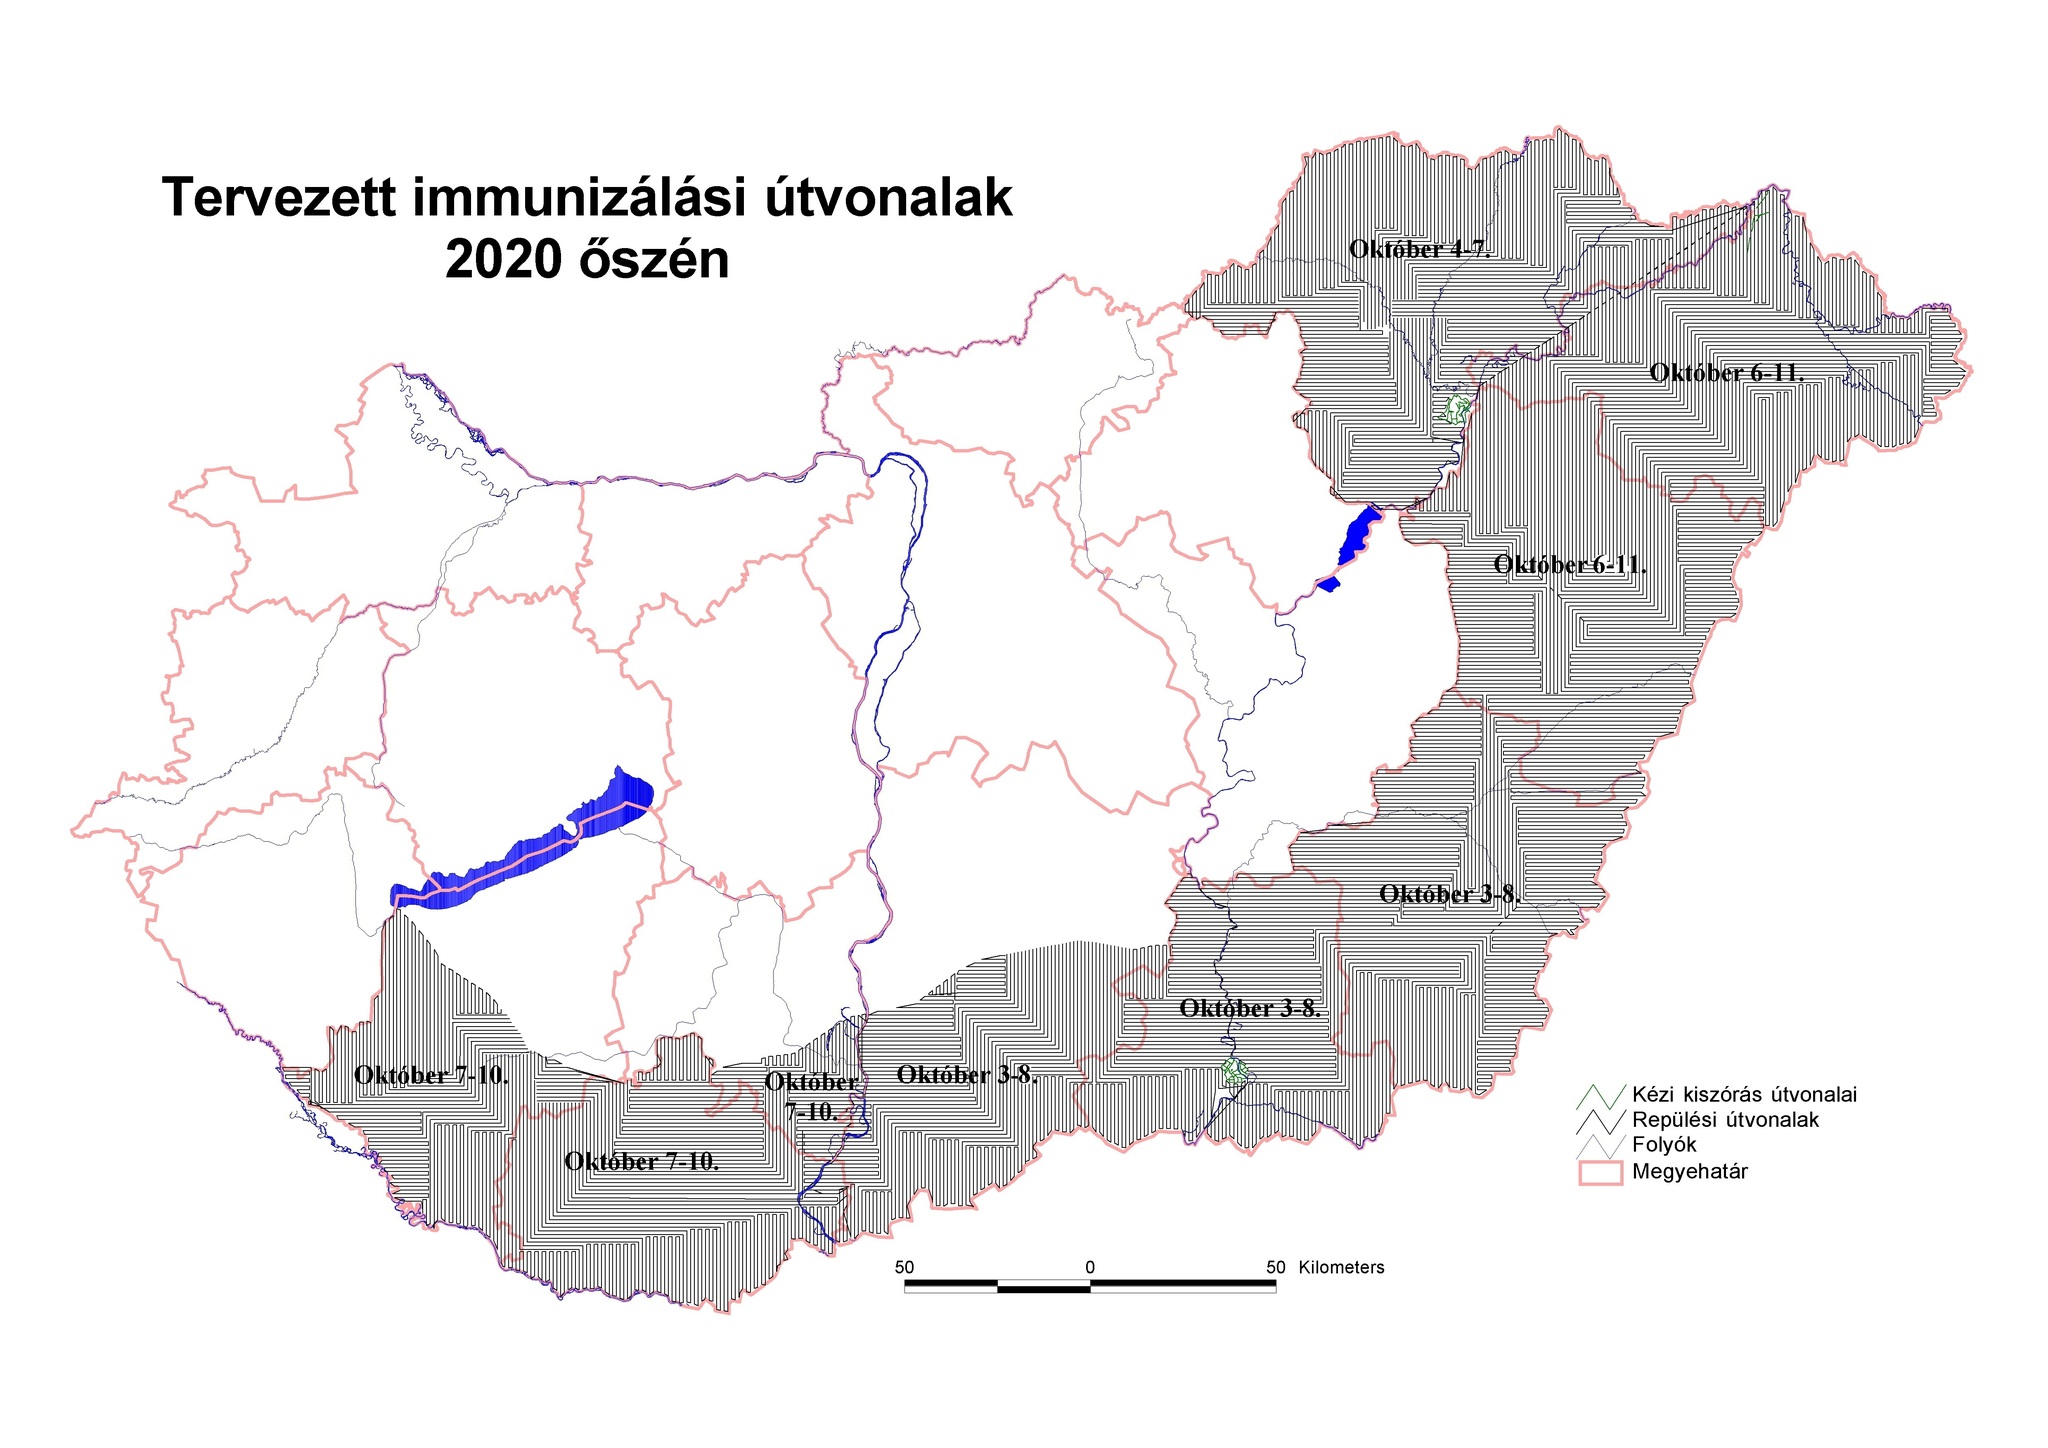 Az ebzárlat által érintett területek Magyarországon 2020 őszén